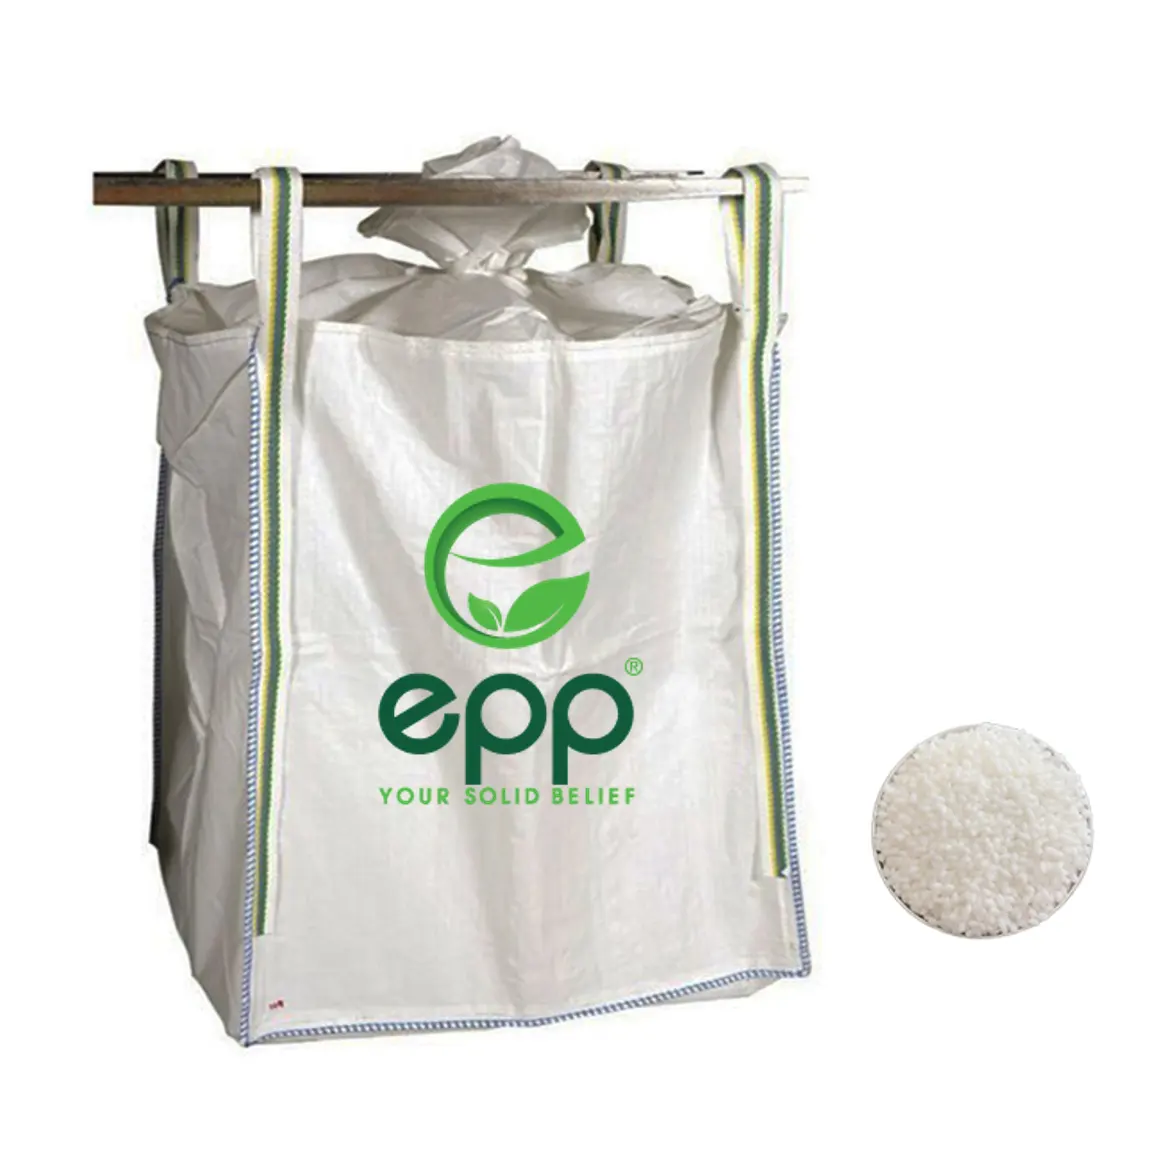 Cabestrillo fuerte duradero para bolsas jumbo a granel, Flexible, personalizable, precio directo de fábrica